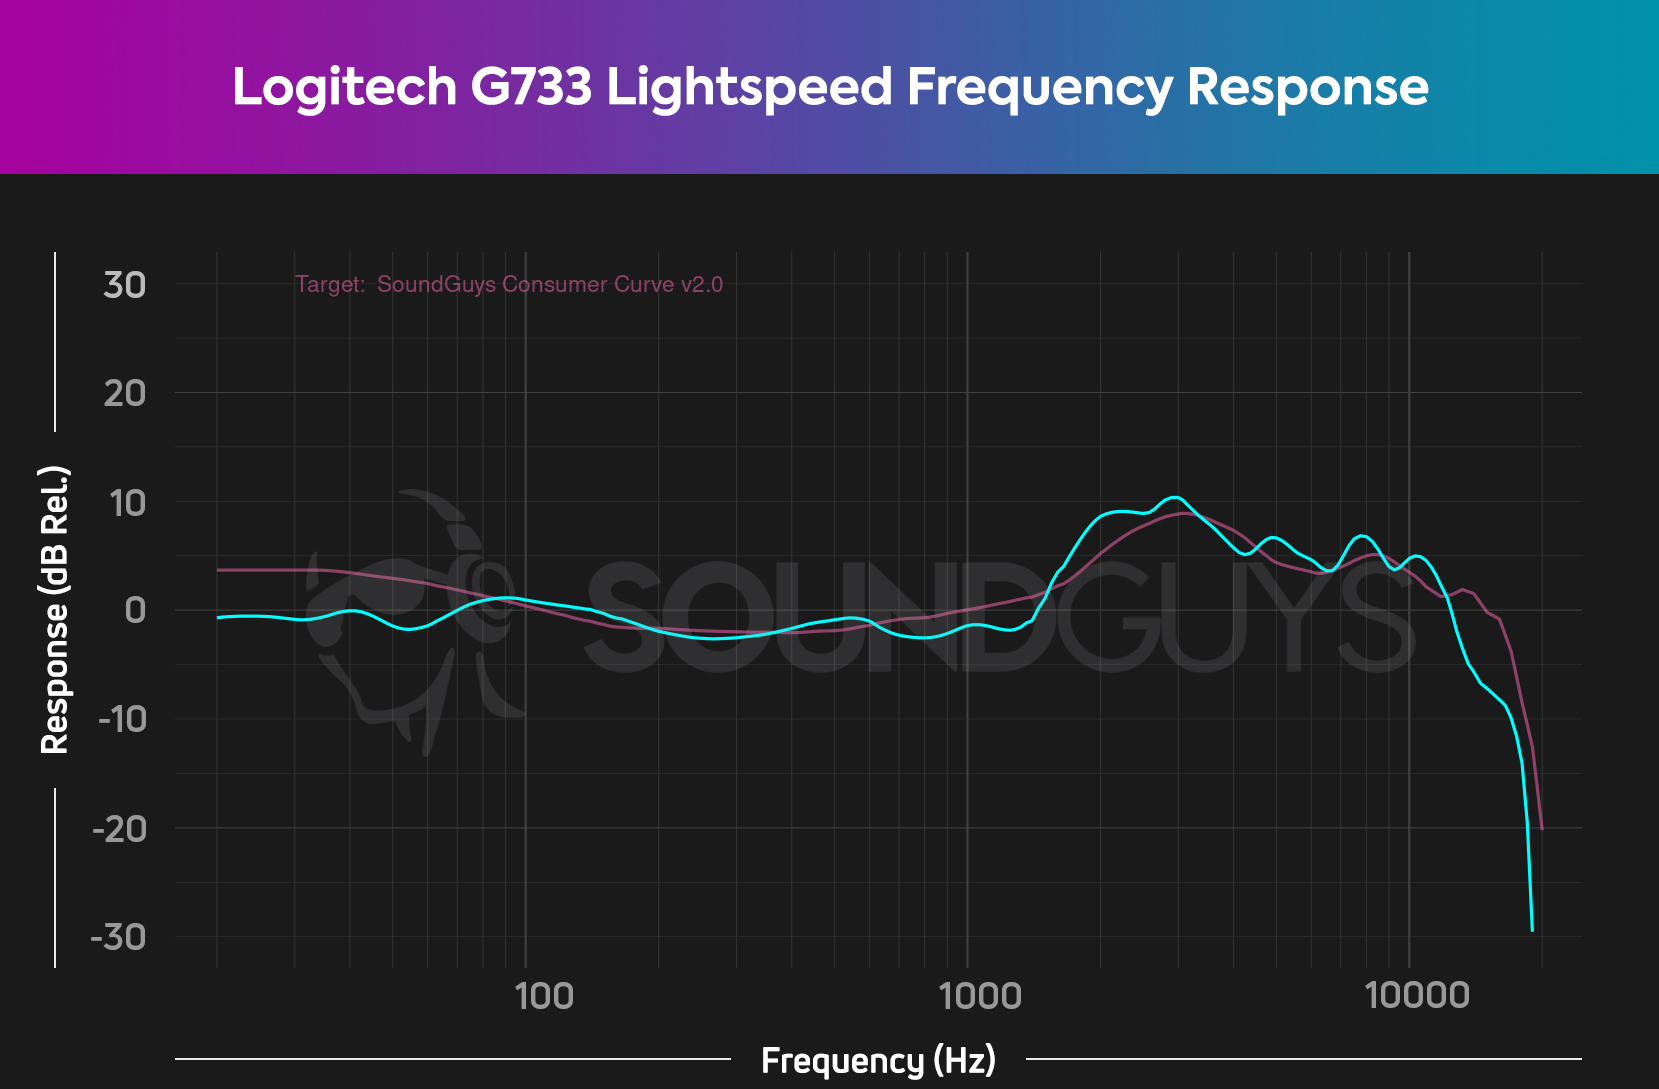 https://www.soundguys.com/wp-content/uploads/2021/06/Logitech-G733-NEWFR-chart.jpg